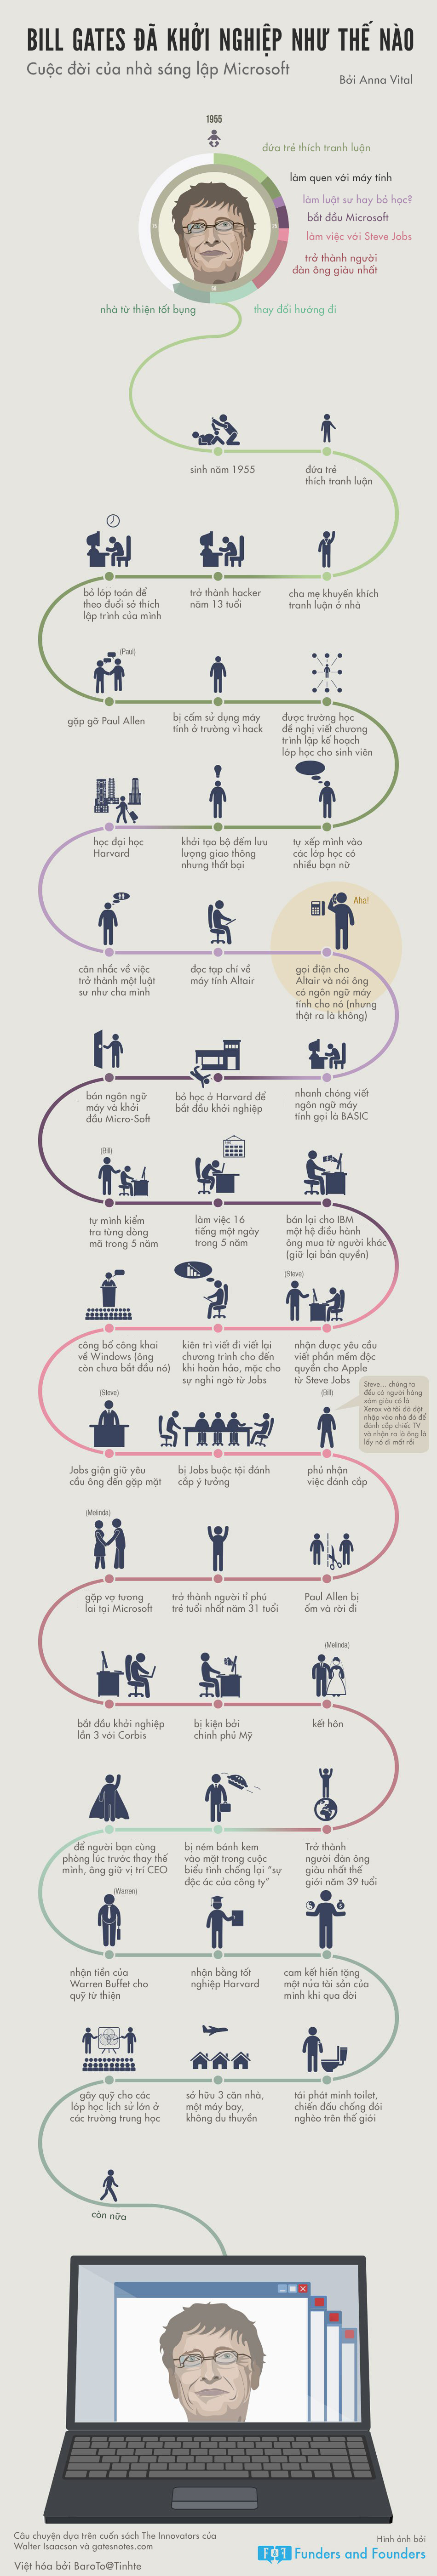 [Infographic] Cuộc đời khởi nghiệp của Bill Gates 5